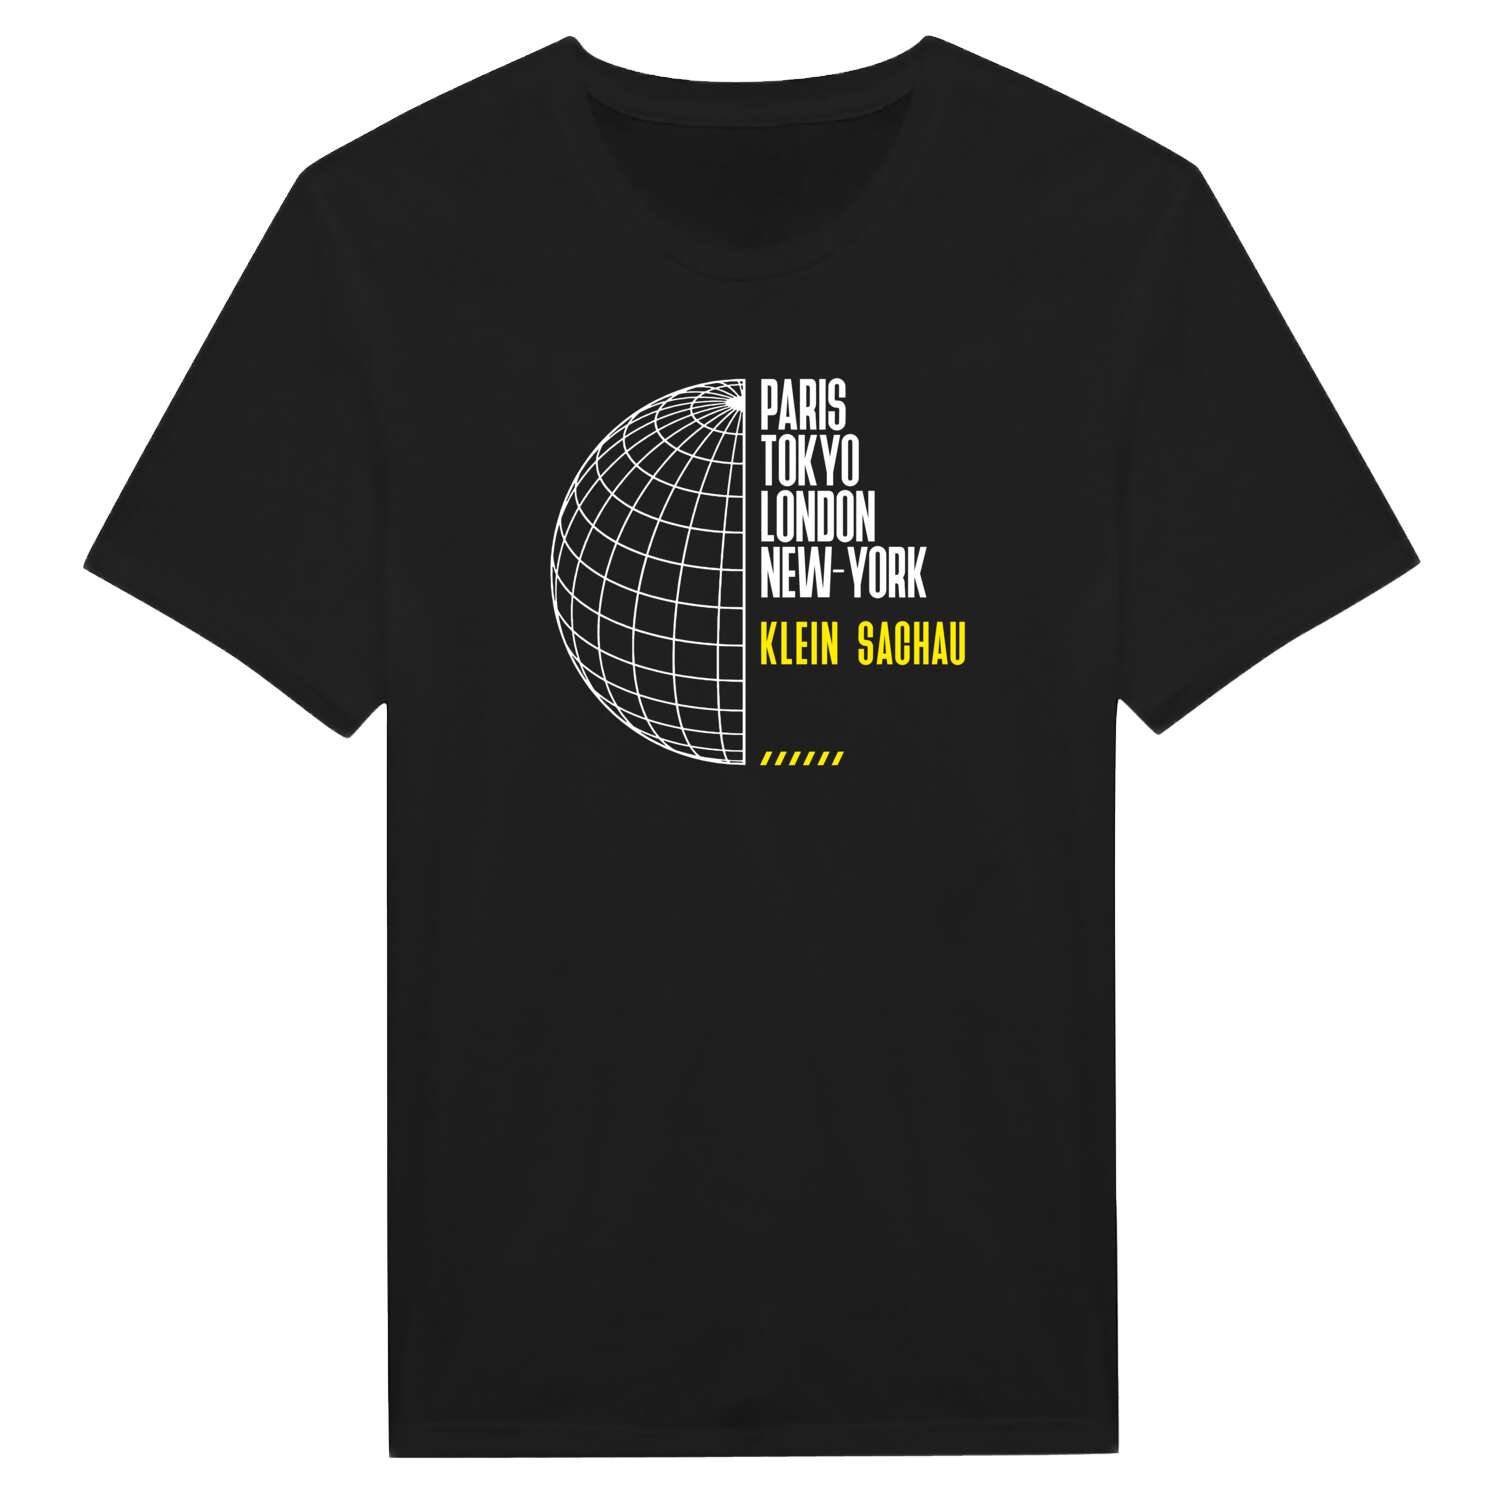 Klein Sachau T-Shirt »Paris Tokyo London«